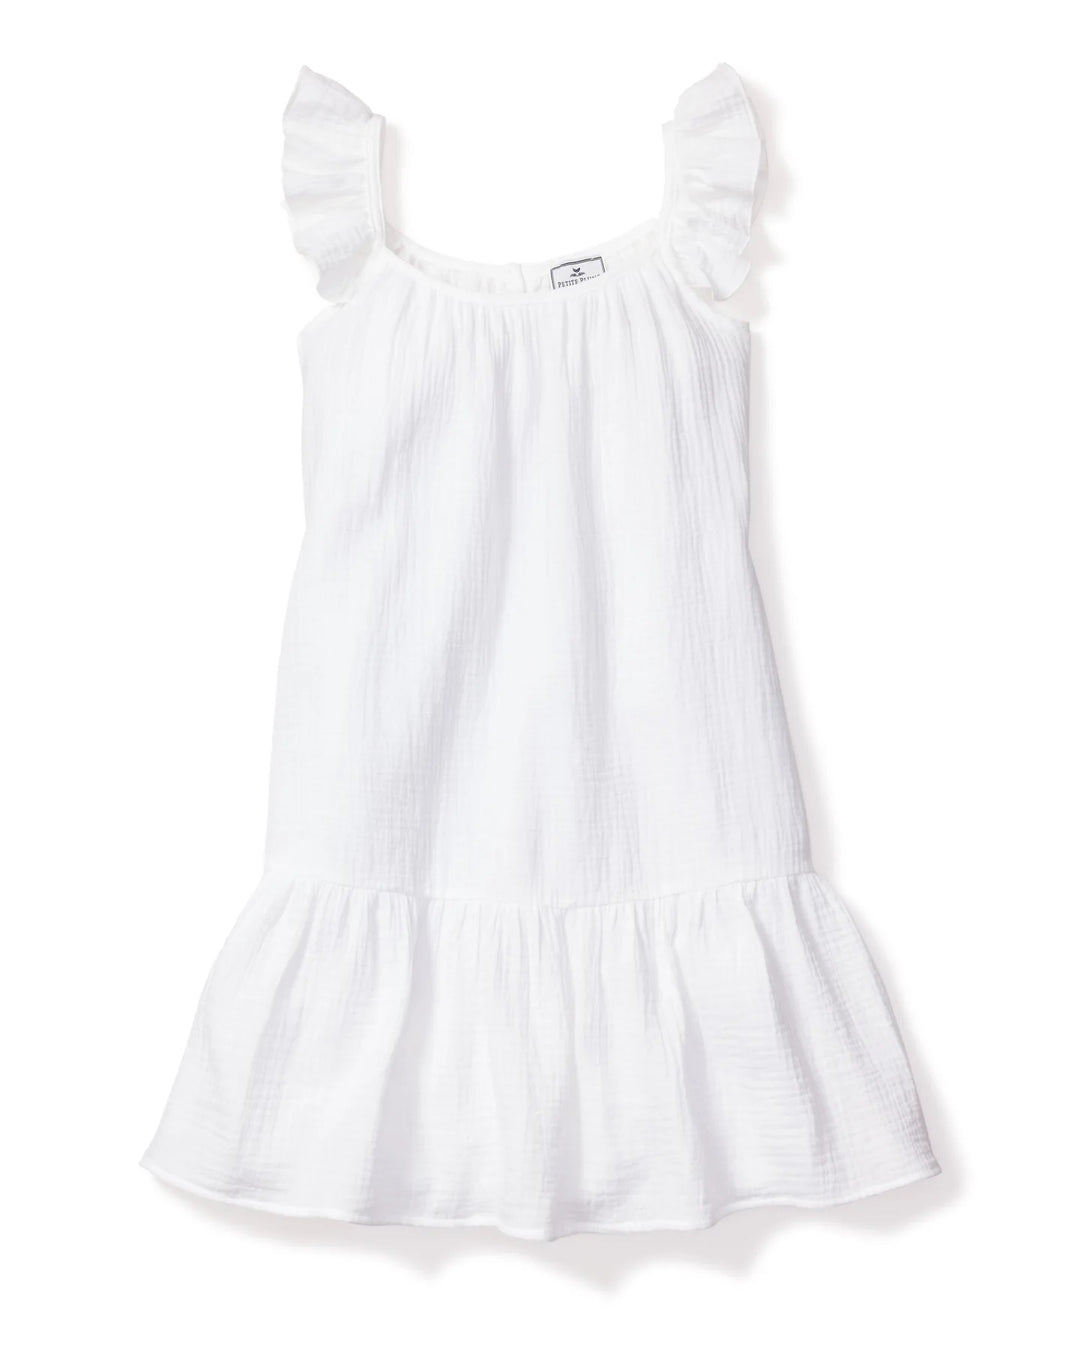 Girl's White Gauze Celeste Sun Dress